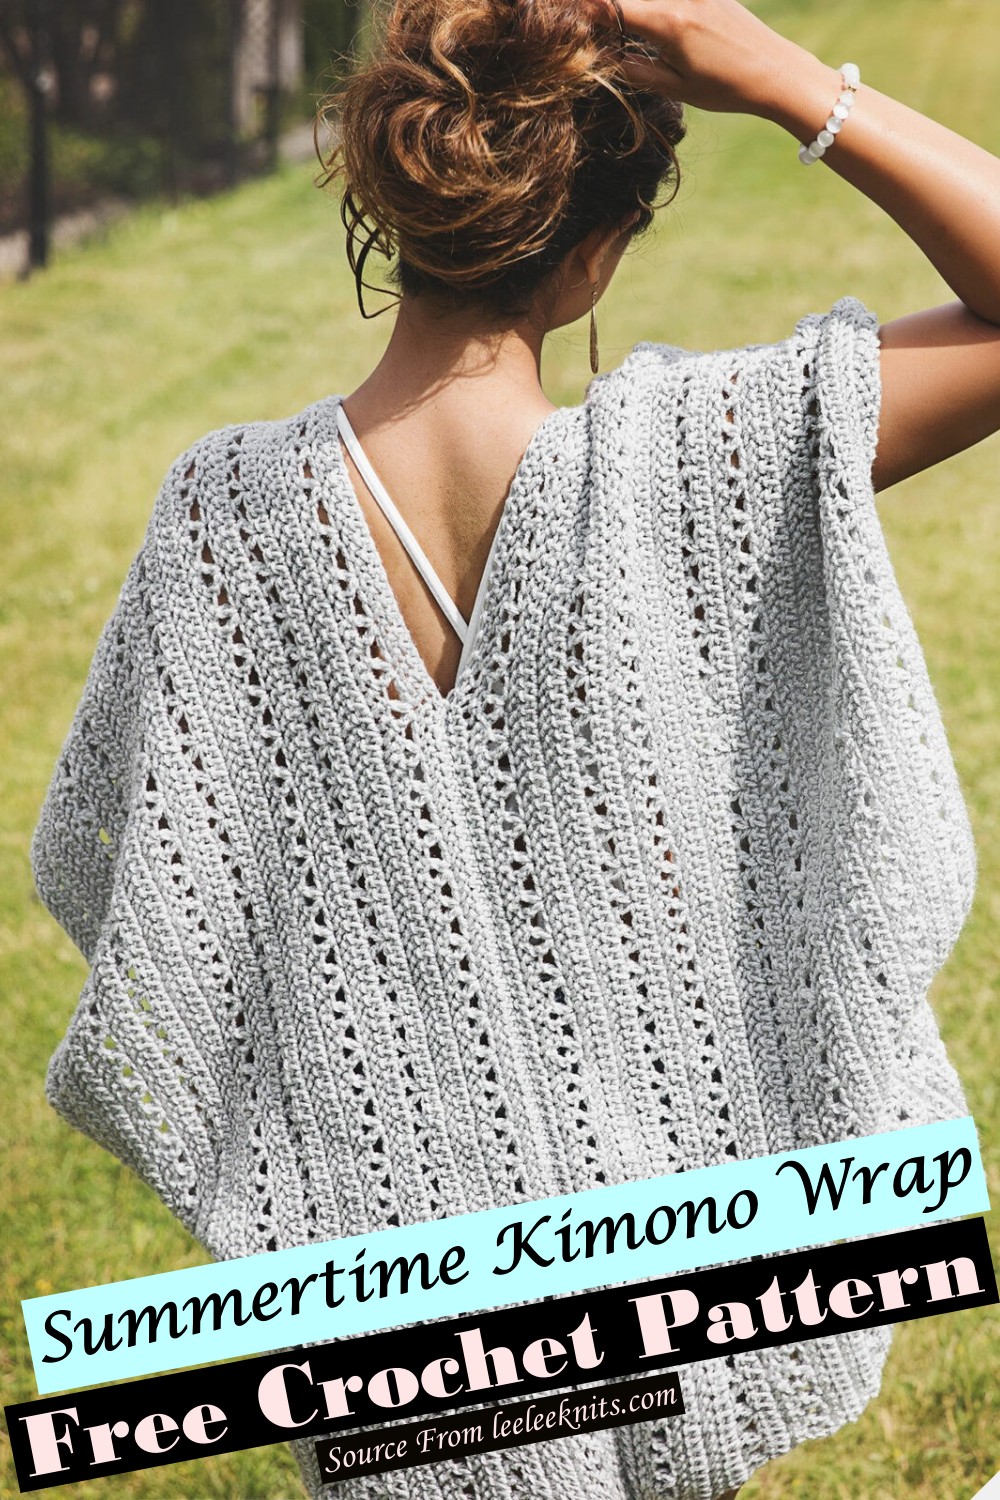 Summertime Kimono Wrap Crochet Pattern